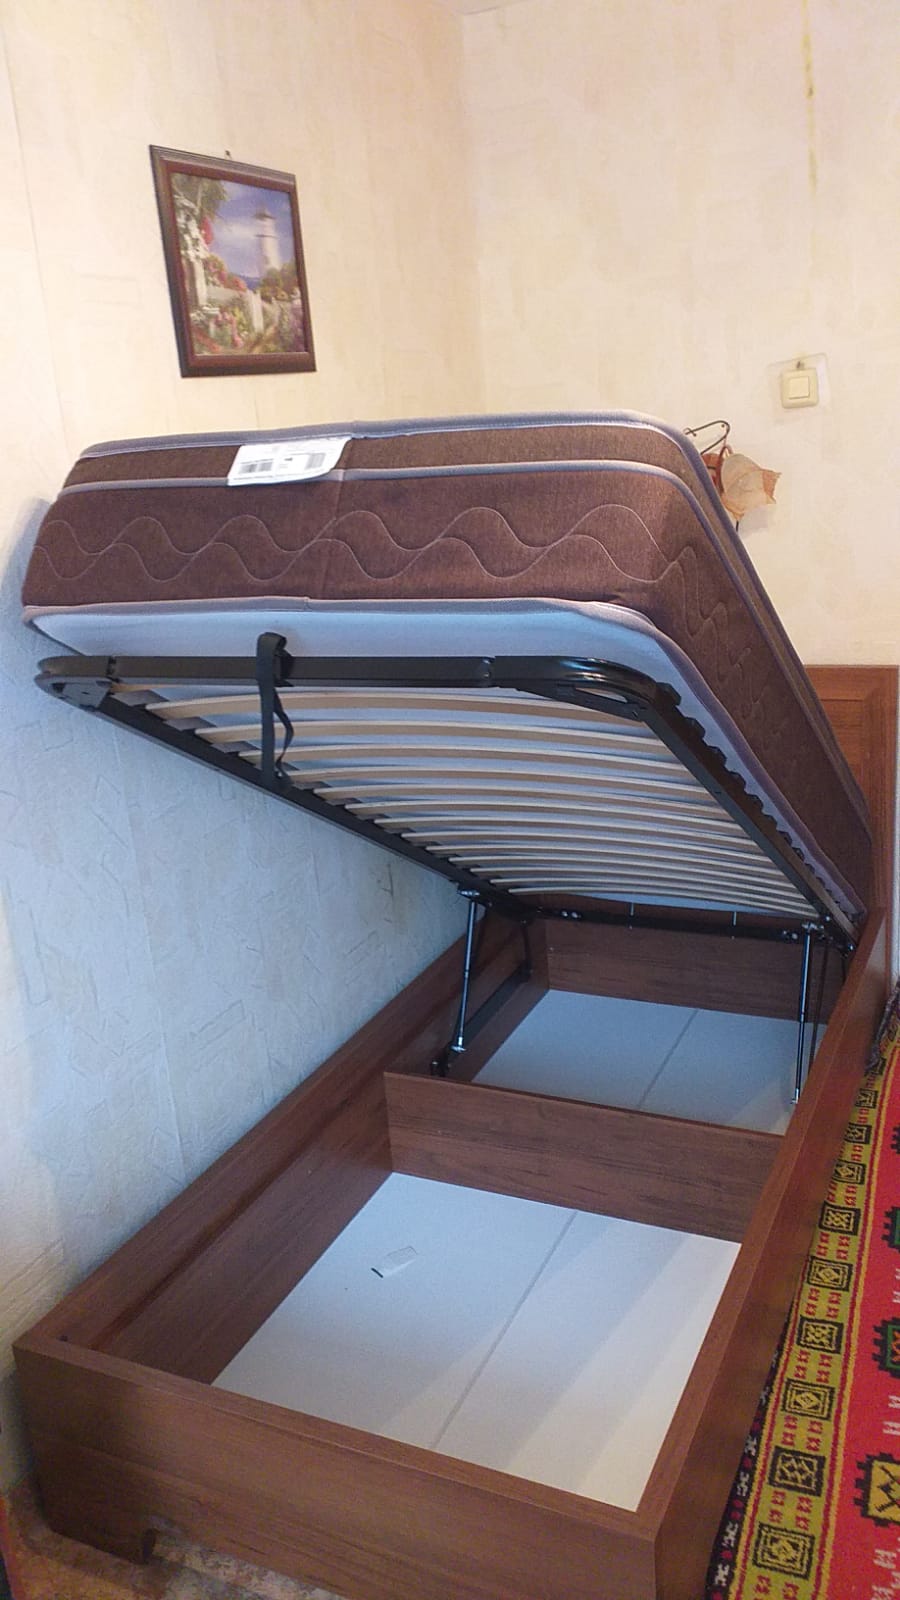 Полутораспальная кровать "Мальта" 120 х 190 с ортопедическим основанием цвет сонома